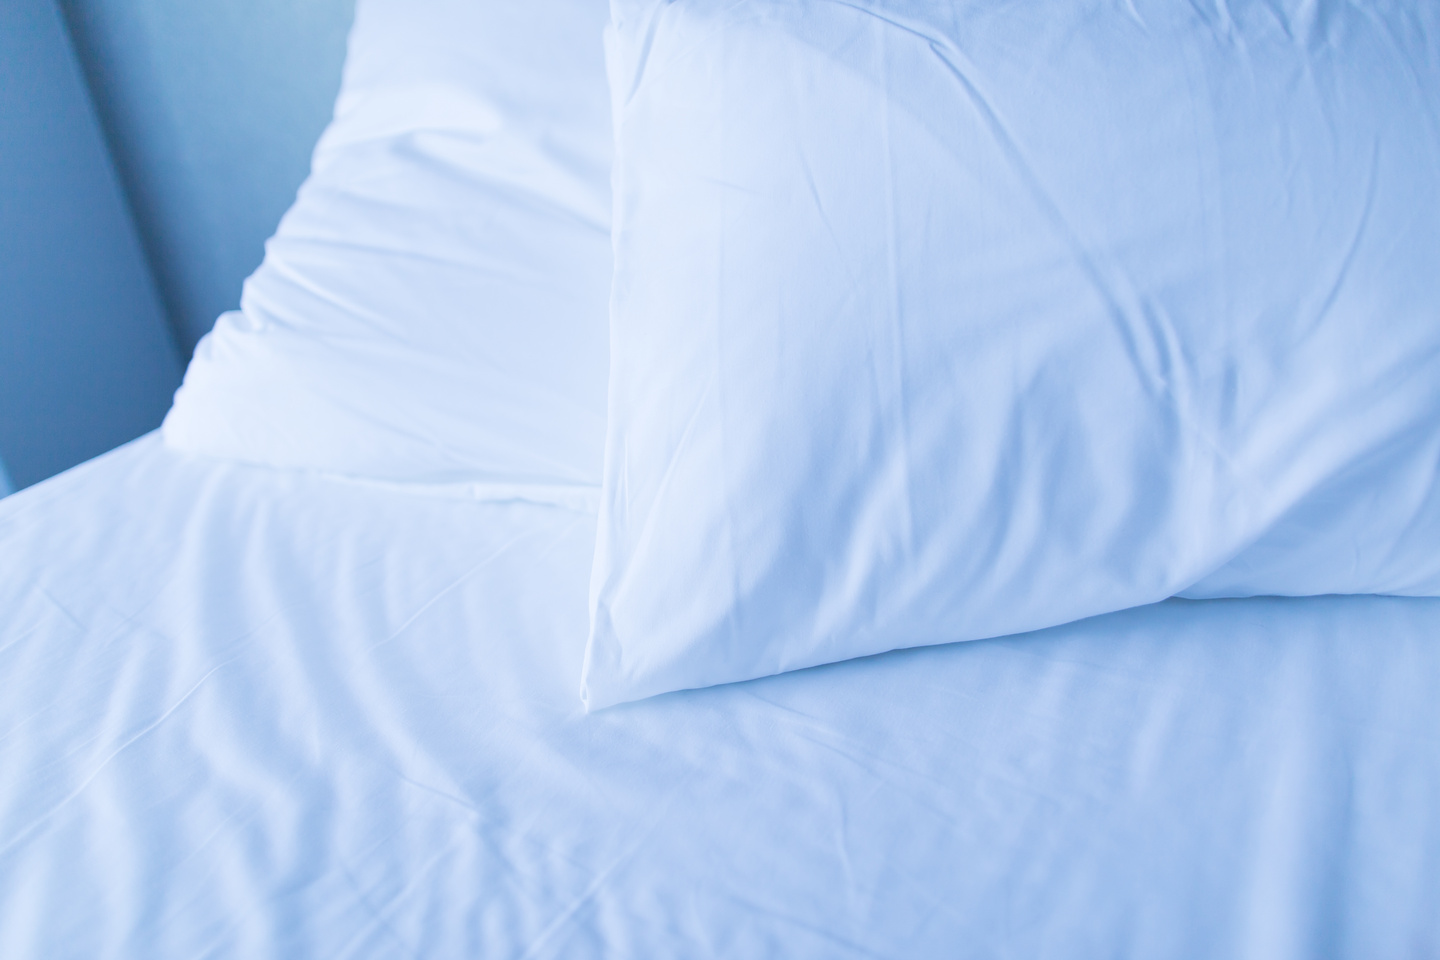 枕、マットレス、布団の寿命はいつ？意外と知らない「寝具」の正しい買い替えタイミング